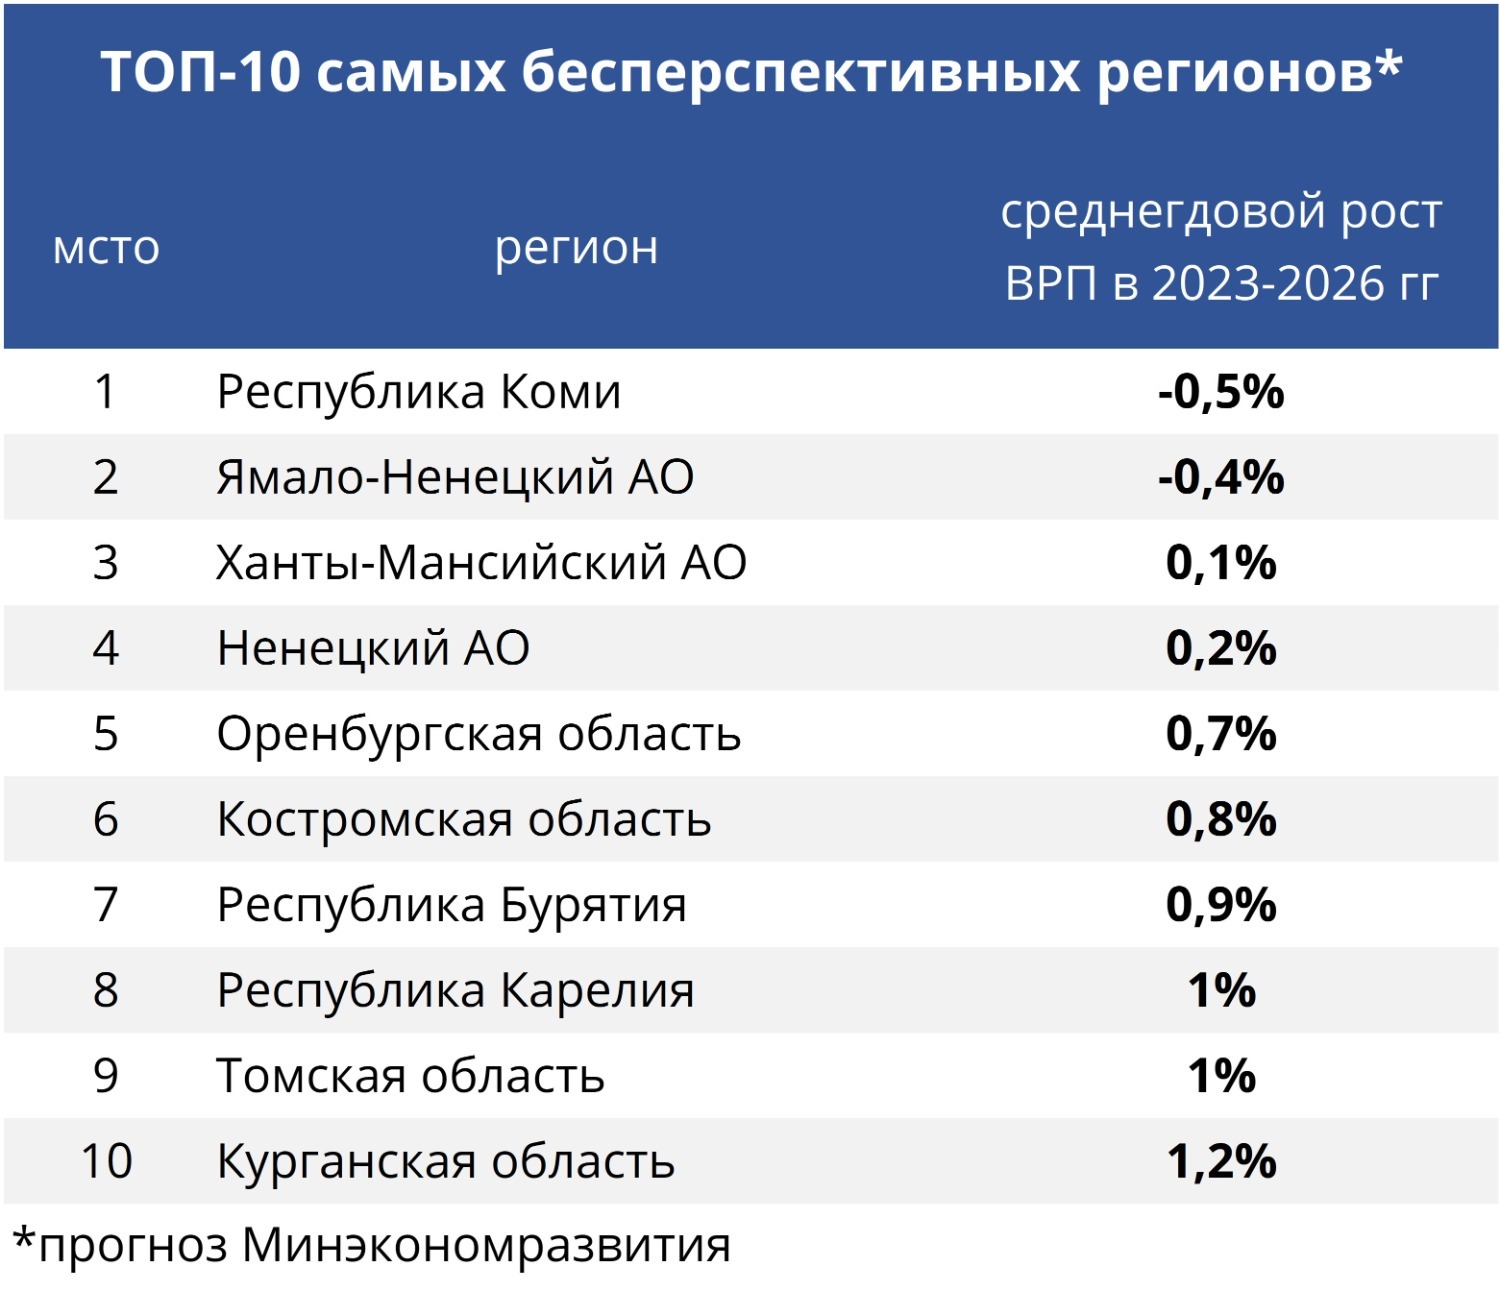 Республика Коми и Ямало-Ненецкий АО - единственные регионы, чья экономика упадет к 2026 году 